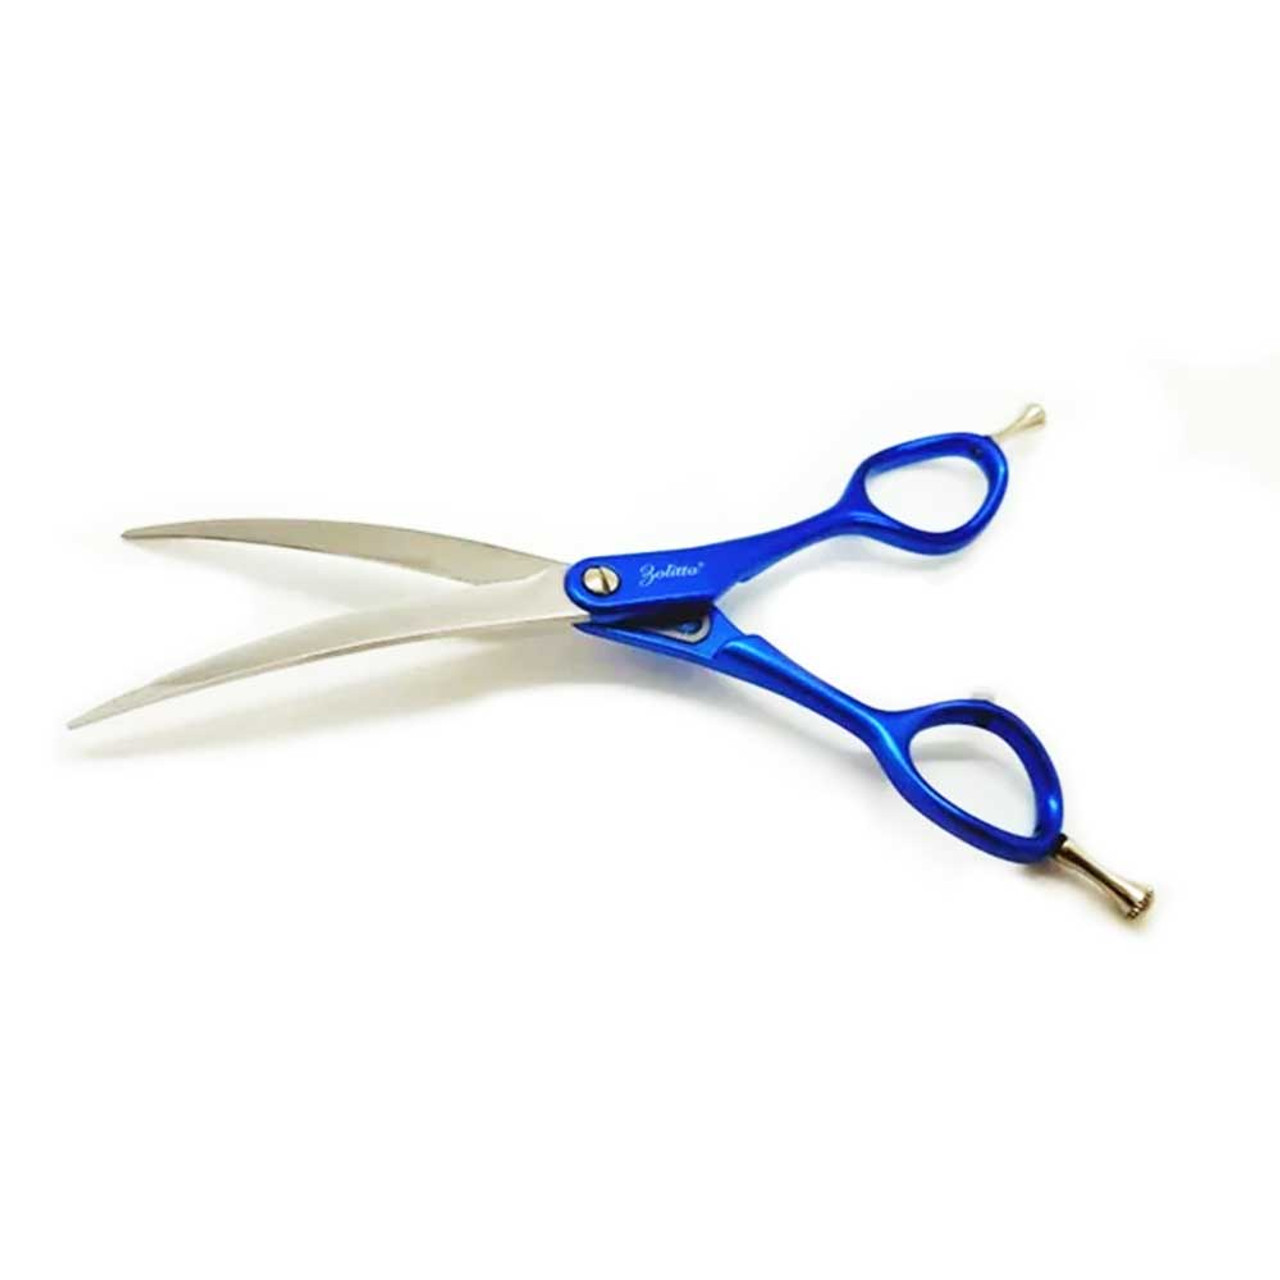 Bravo 8.0 curved scissors